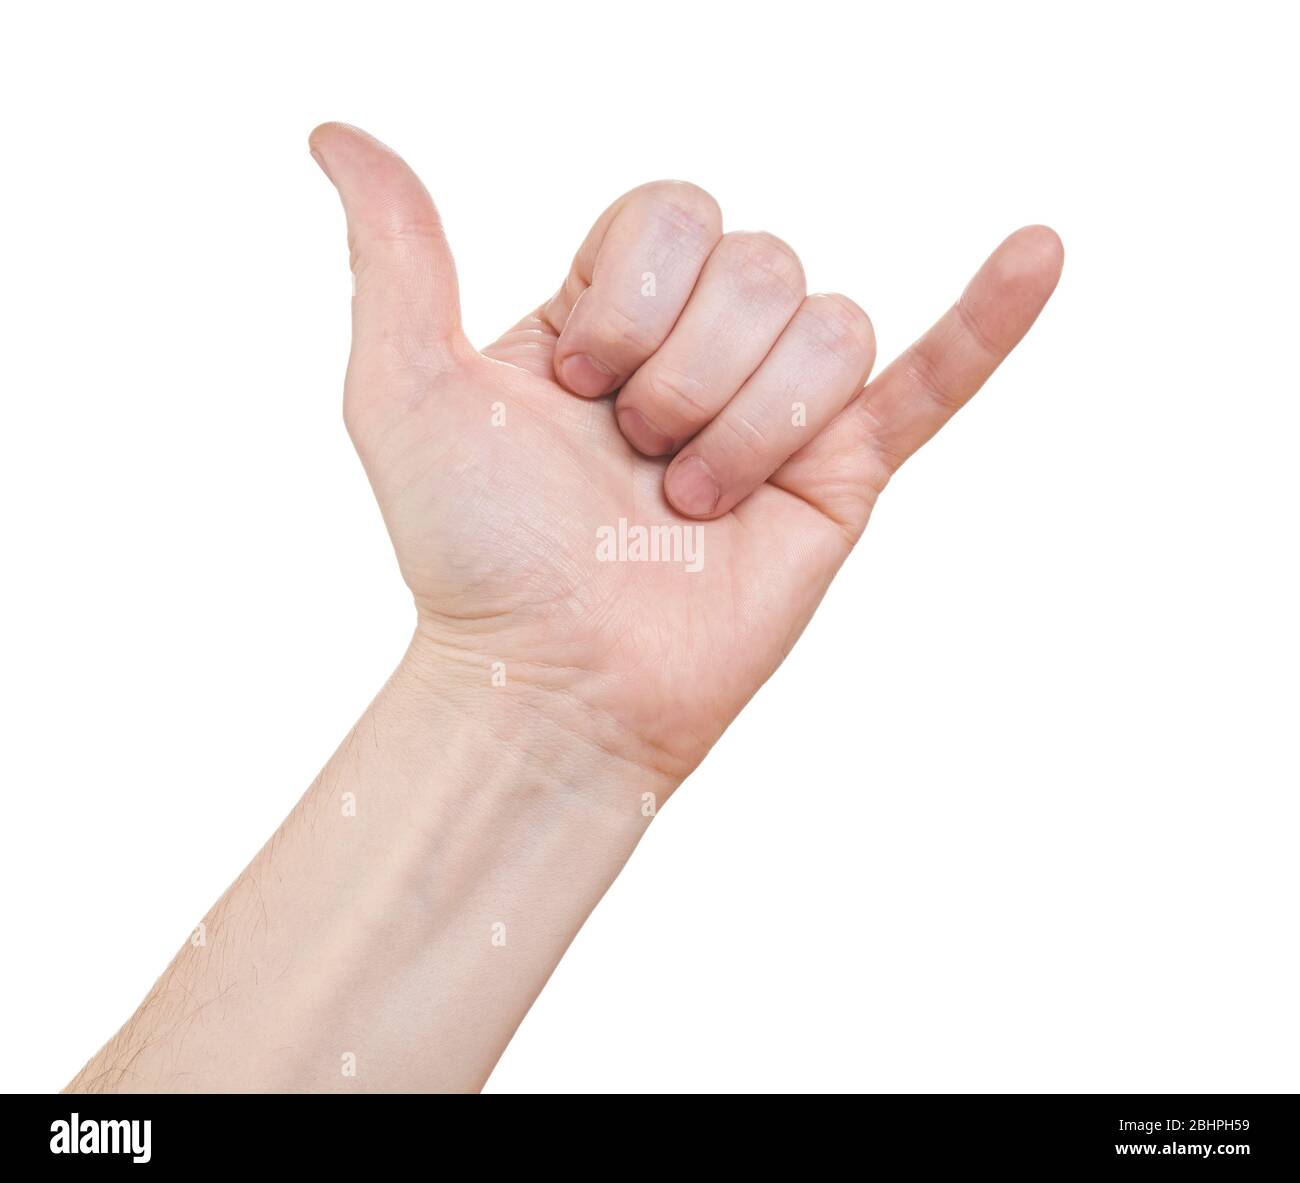 La mano dell'uomo mostra un cartello per effettuare una chiamata. Isolato su sfondo bianco. Foto Stock